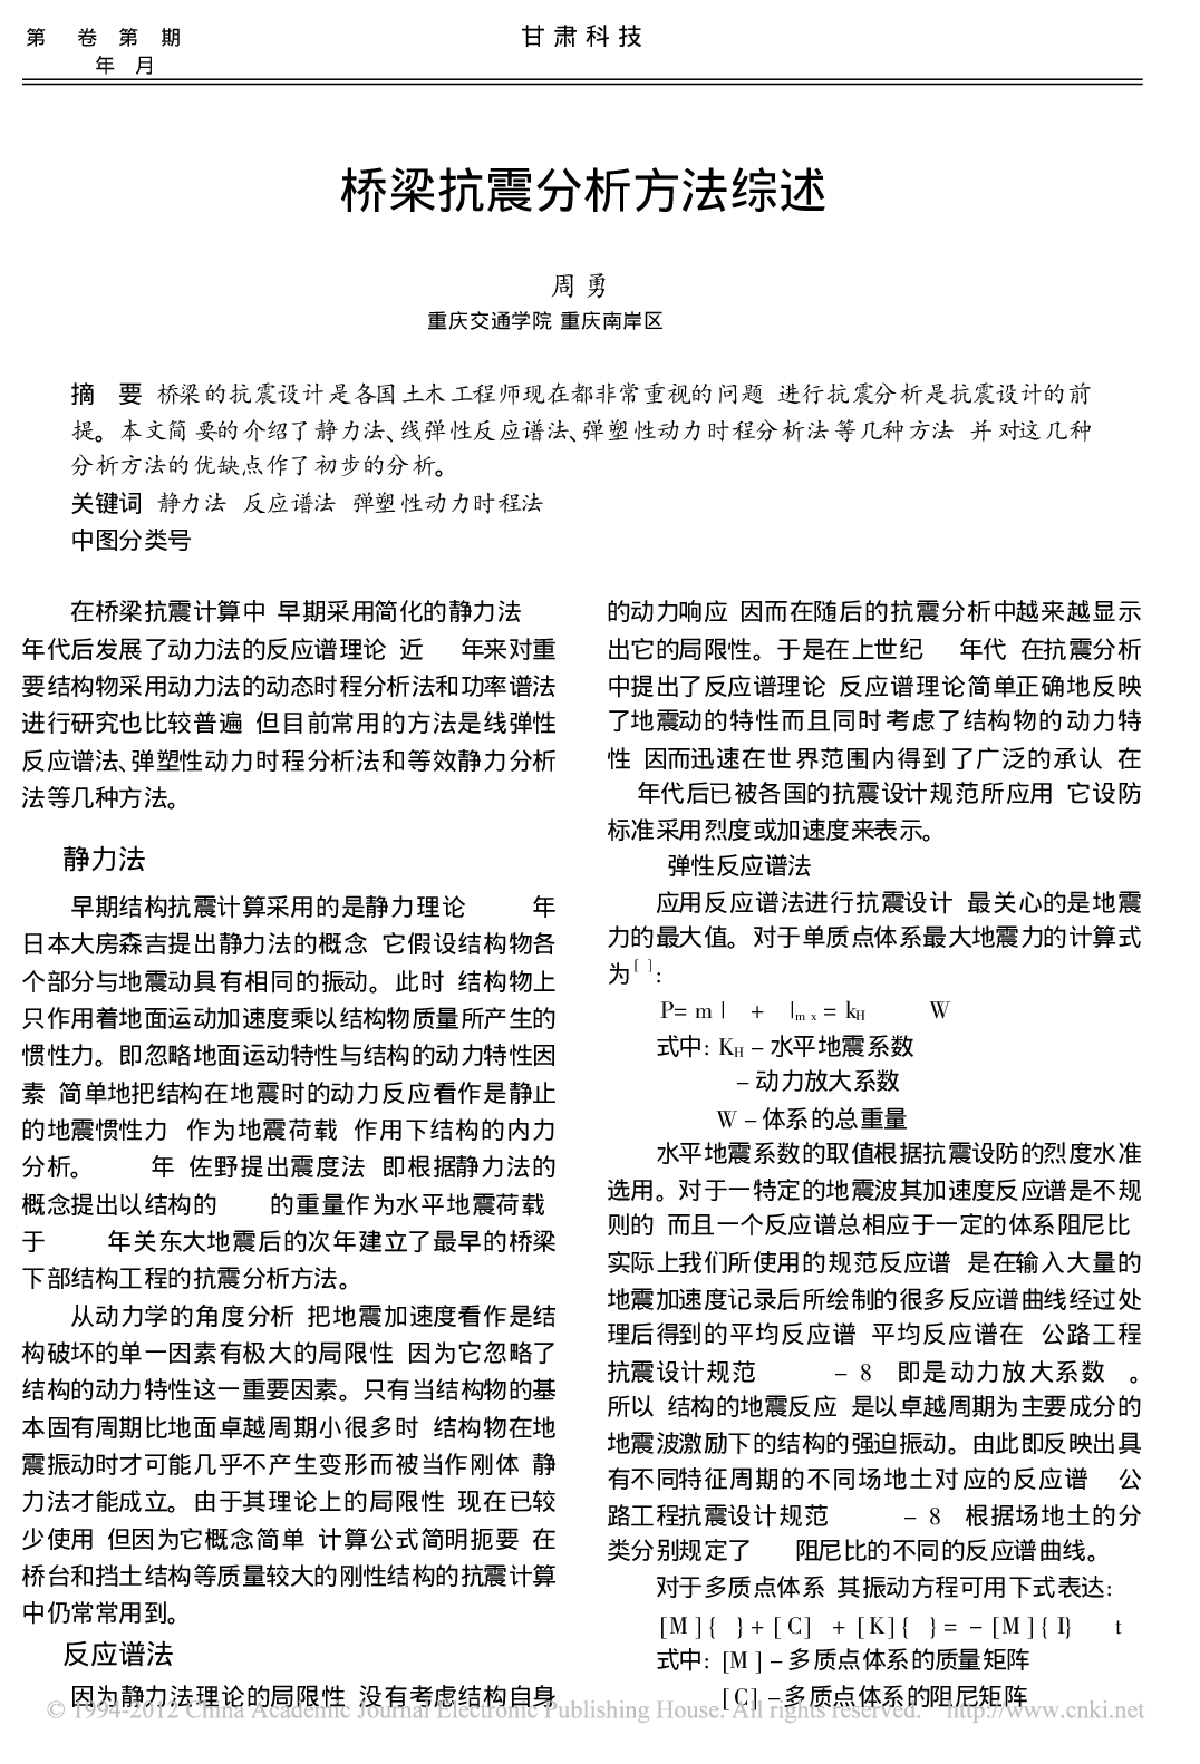 桥梁抗震分析方法综述.pdf